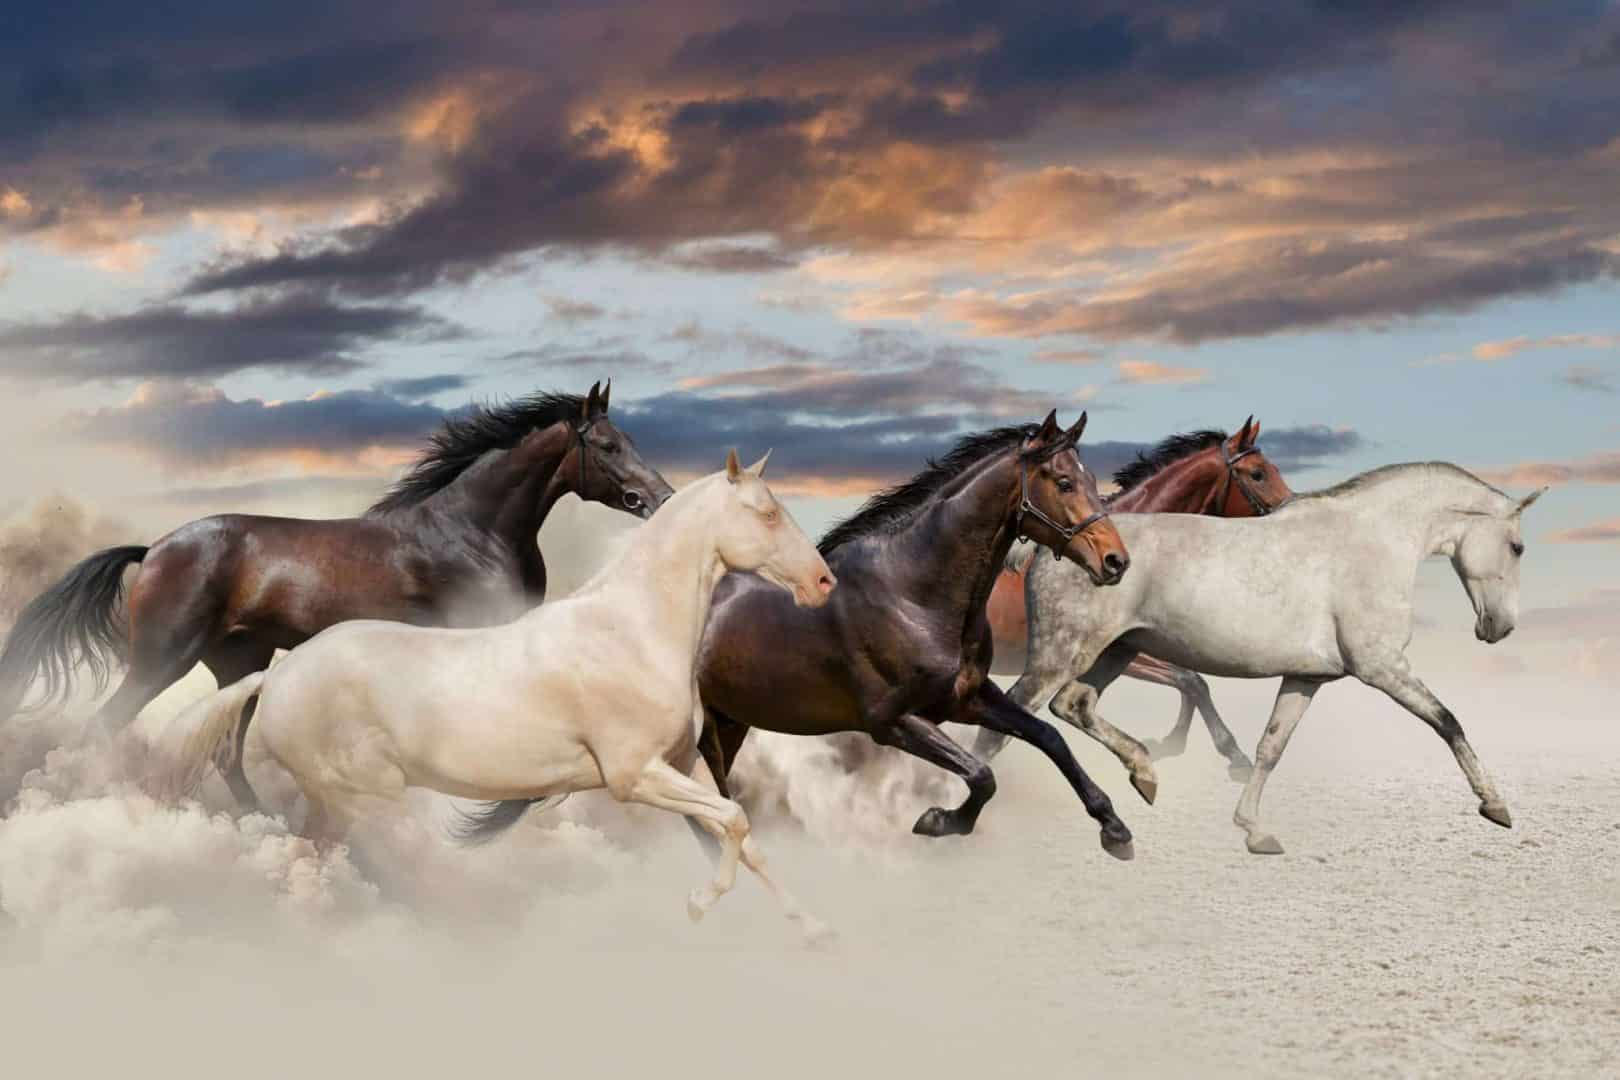 Sonhar com cavalo - Principais significados para esse sonho